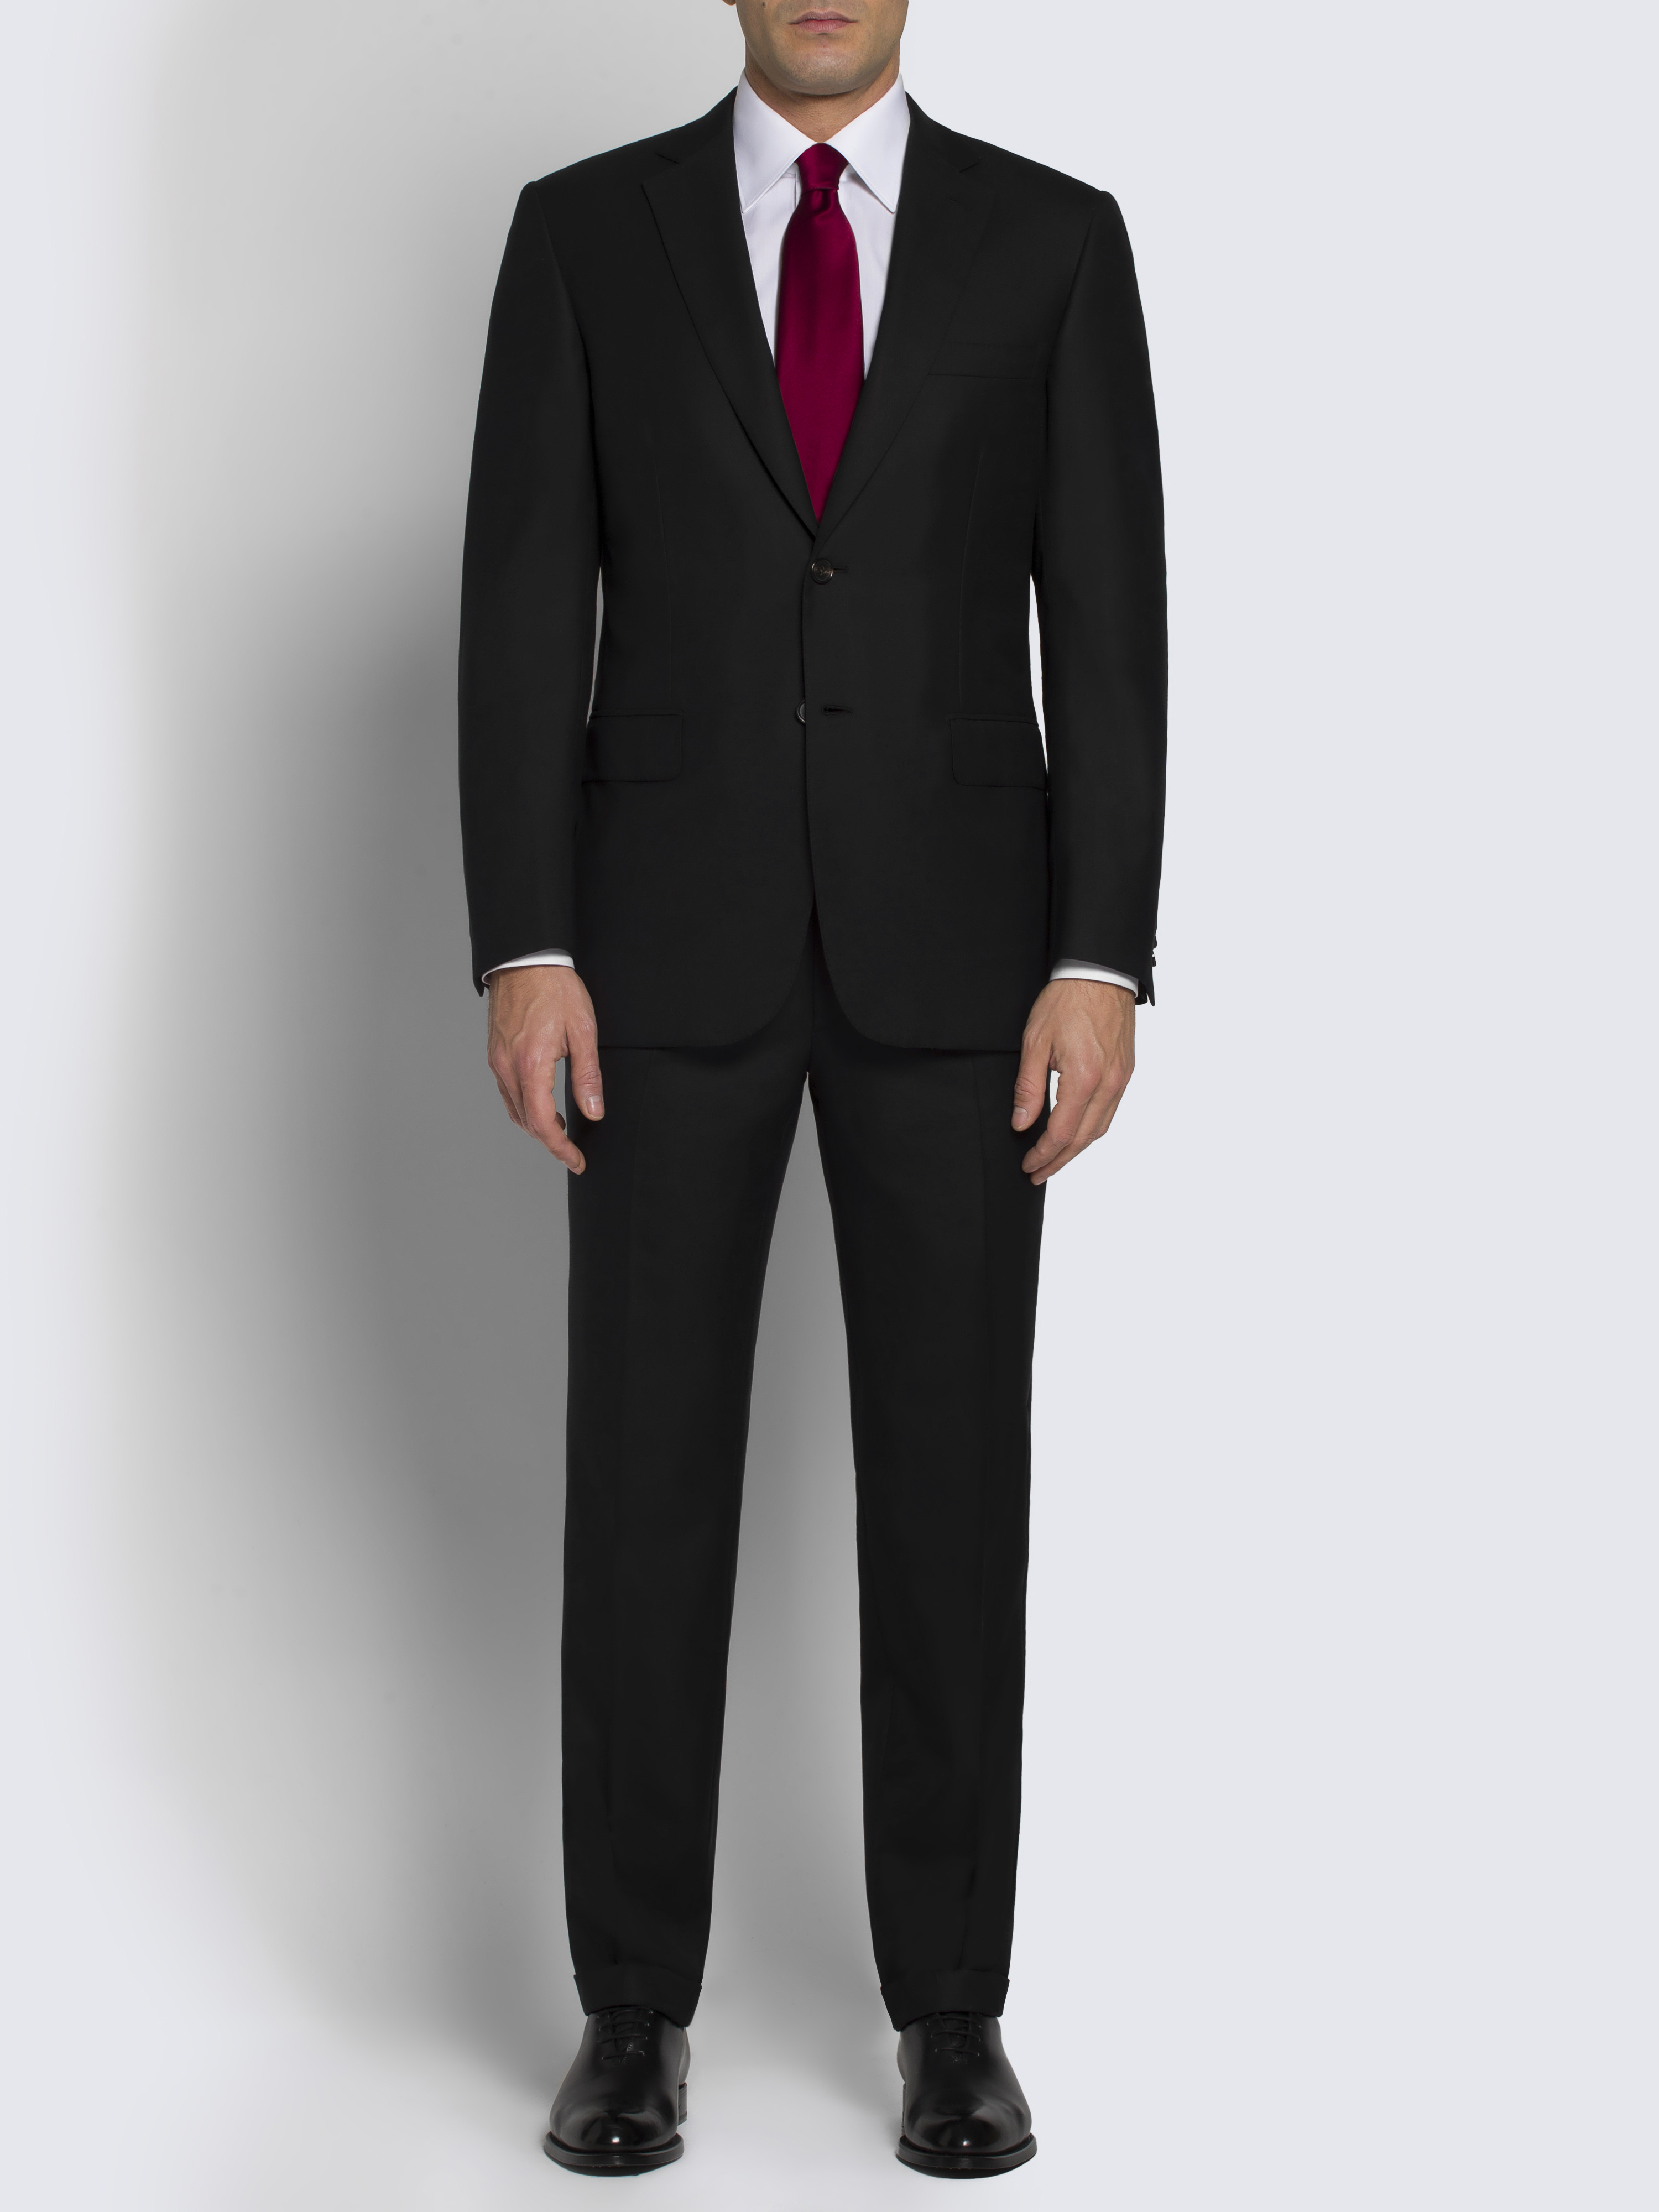 ブリオーニ スーツ 濃紺 - スーツ